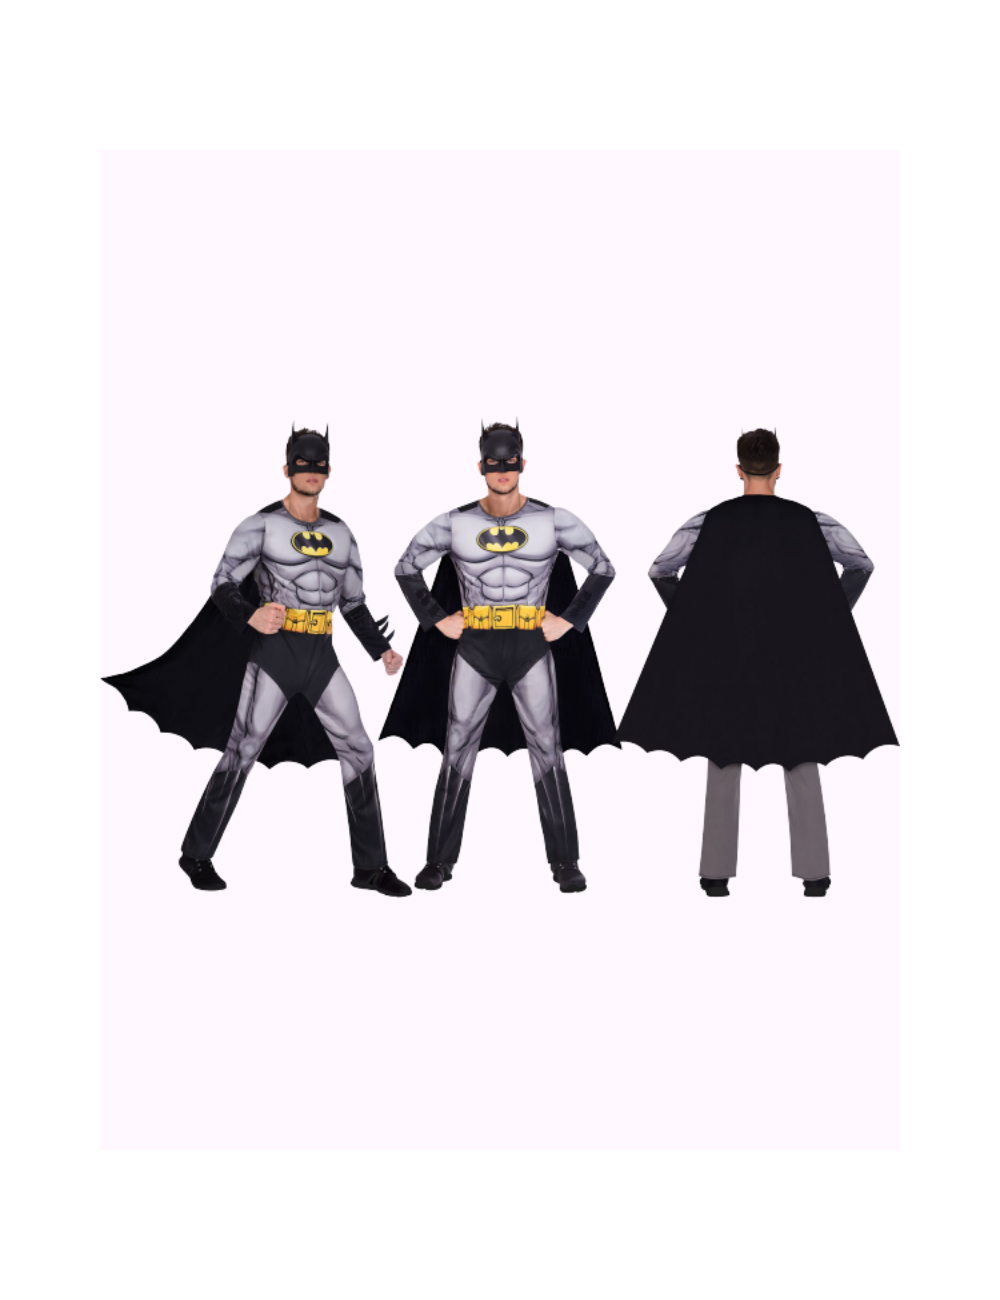 Adult Costume Batman